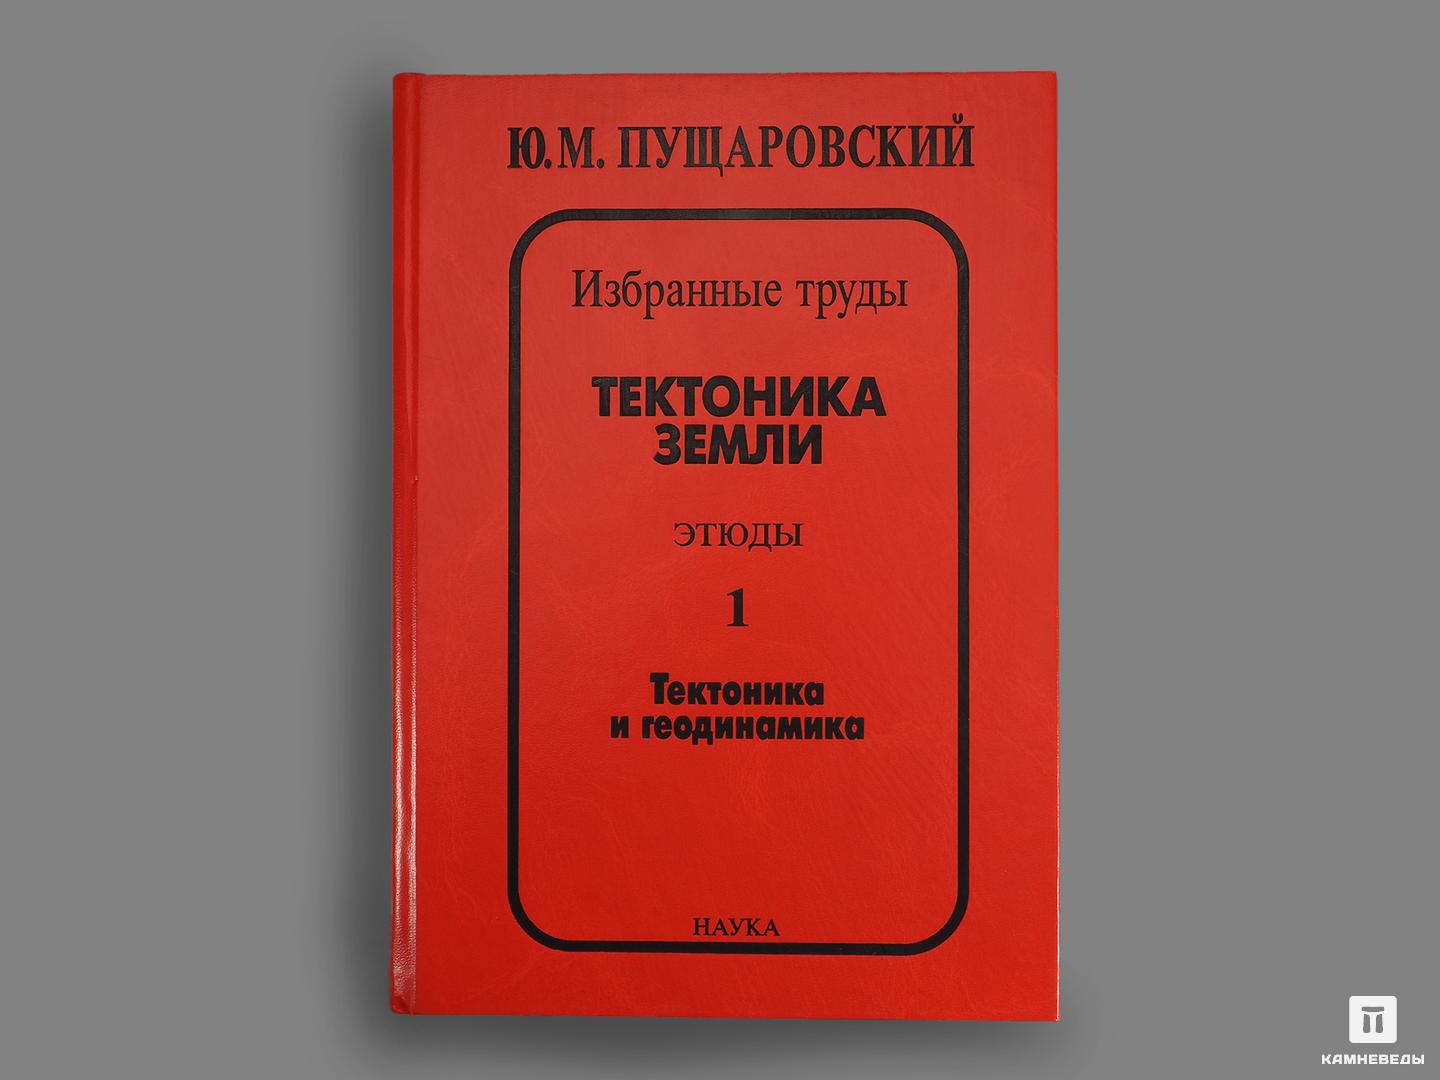 Книга: Ю. М. Пущаровский «Тектоника Земли. Этюды.» 1 и 2 том вопросы и ответы о космосе